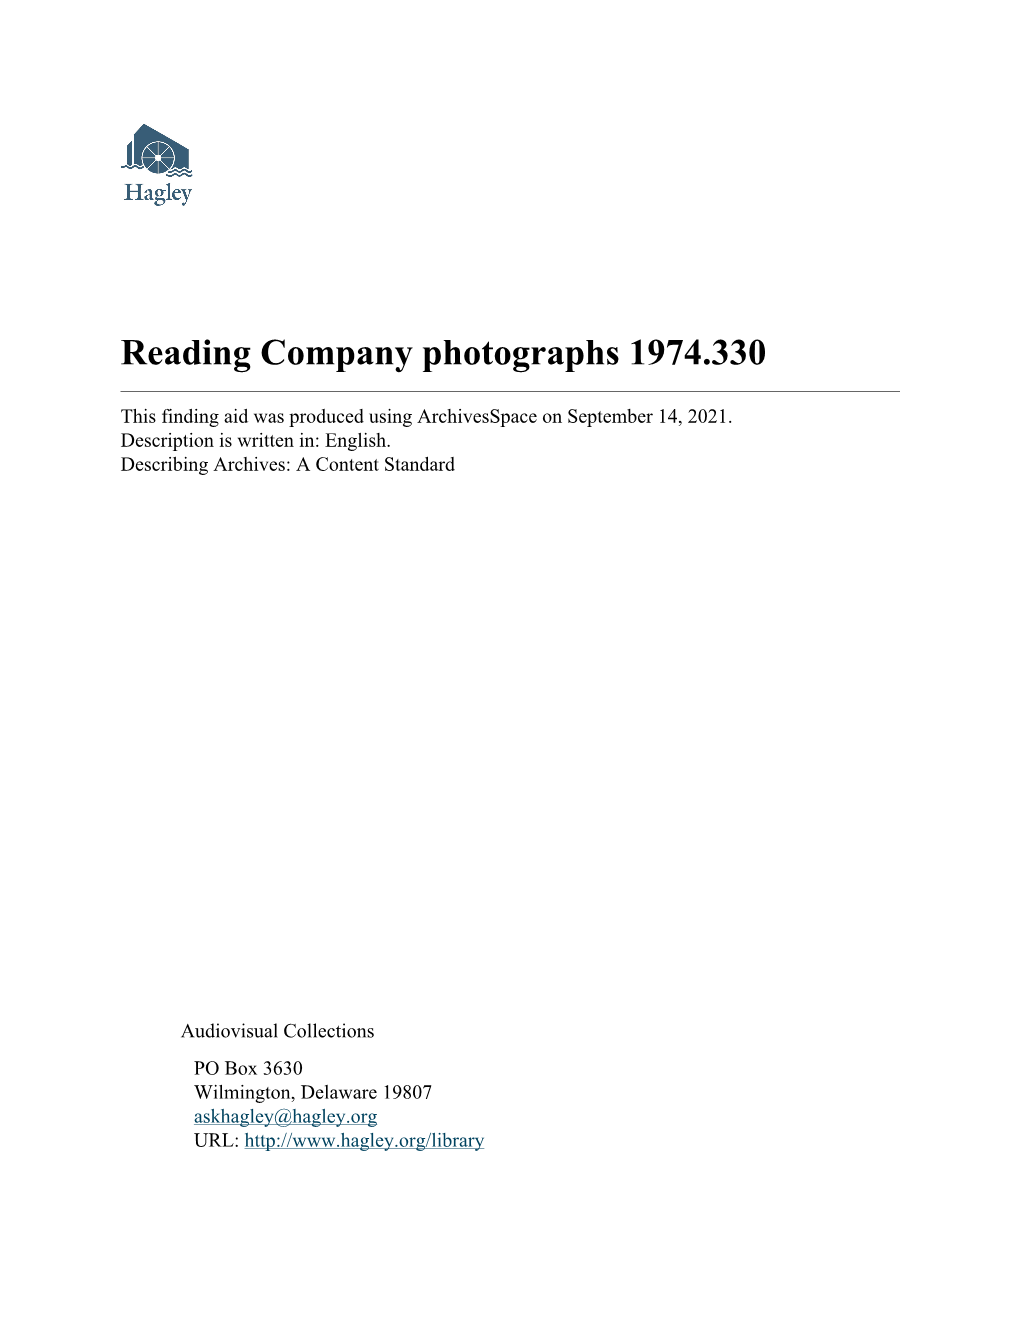 Reading Company Photographs 1974.330